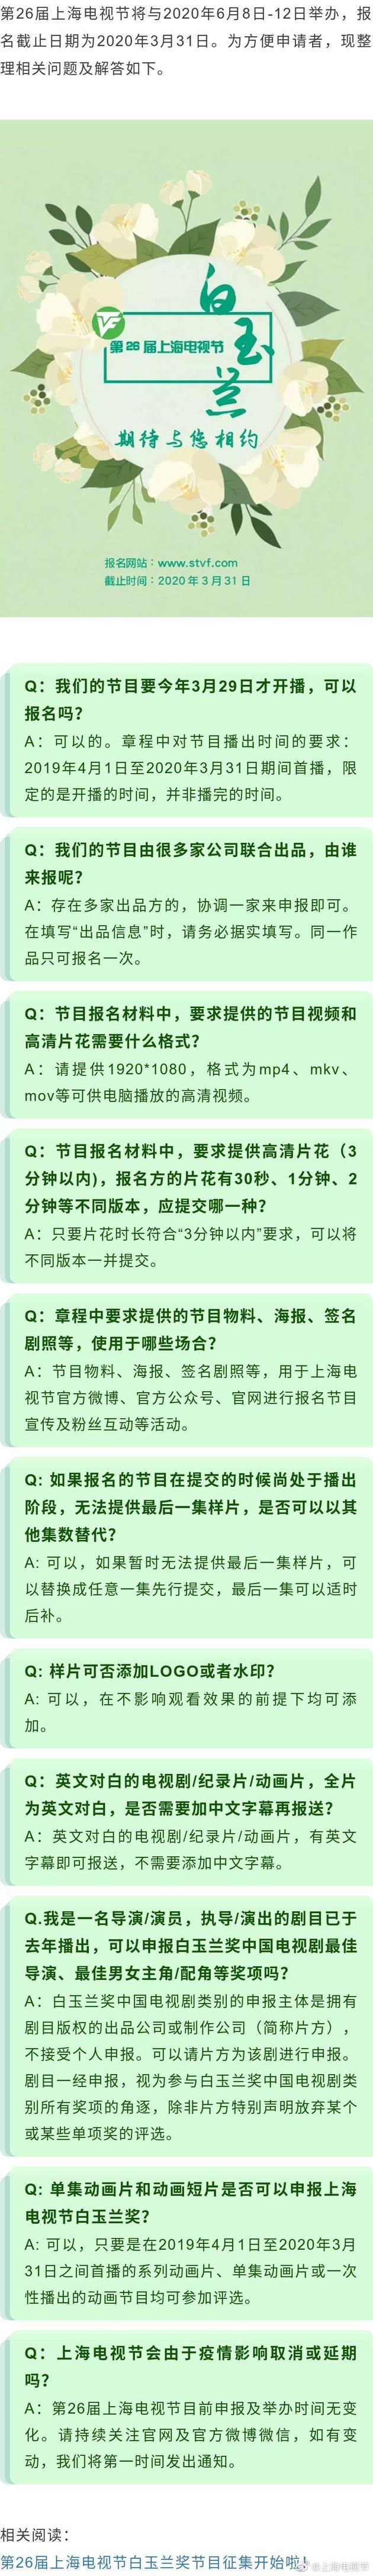 上海电视节组委会在官方微博上发博，对本届白玉兰奖节目征集的详细规则进行解释说明。